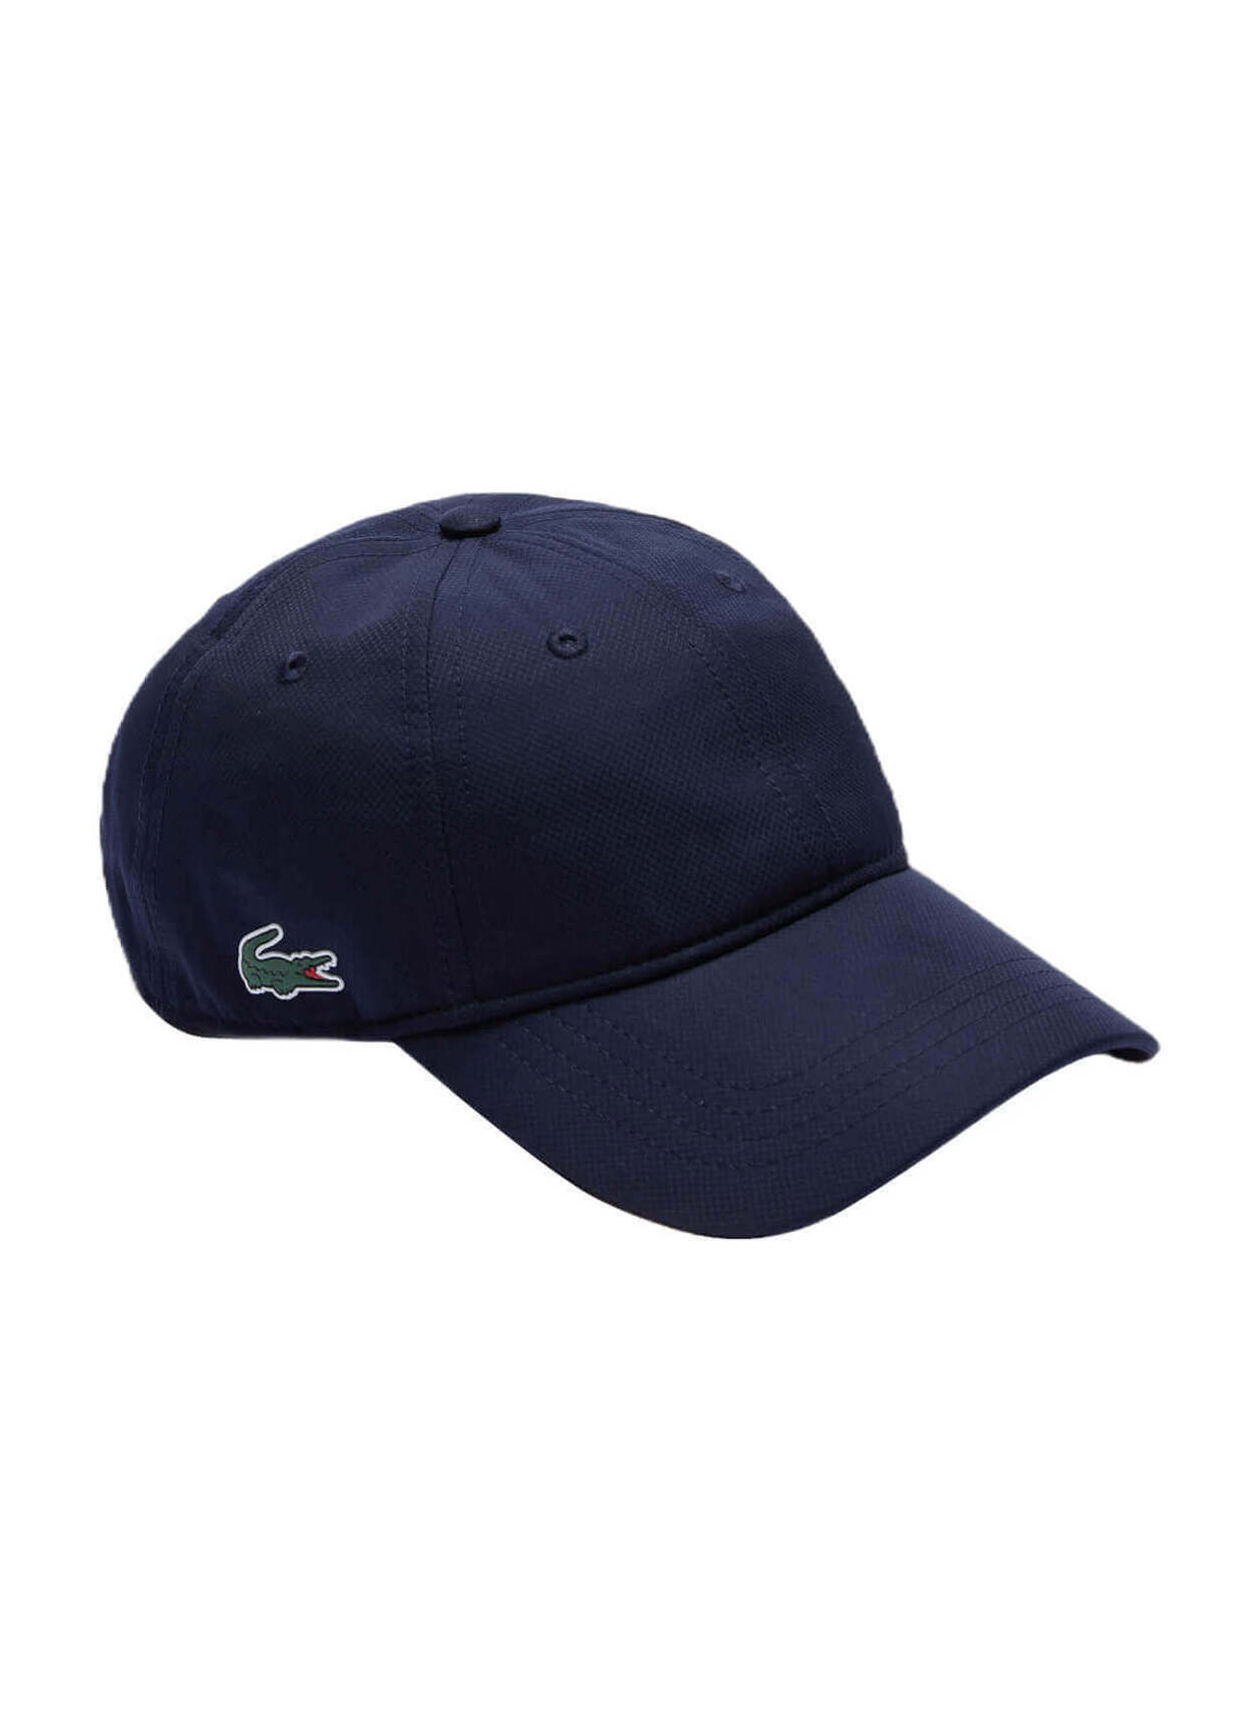 Lacoste Navy Blue Men's SPORT Hat | Lacoste